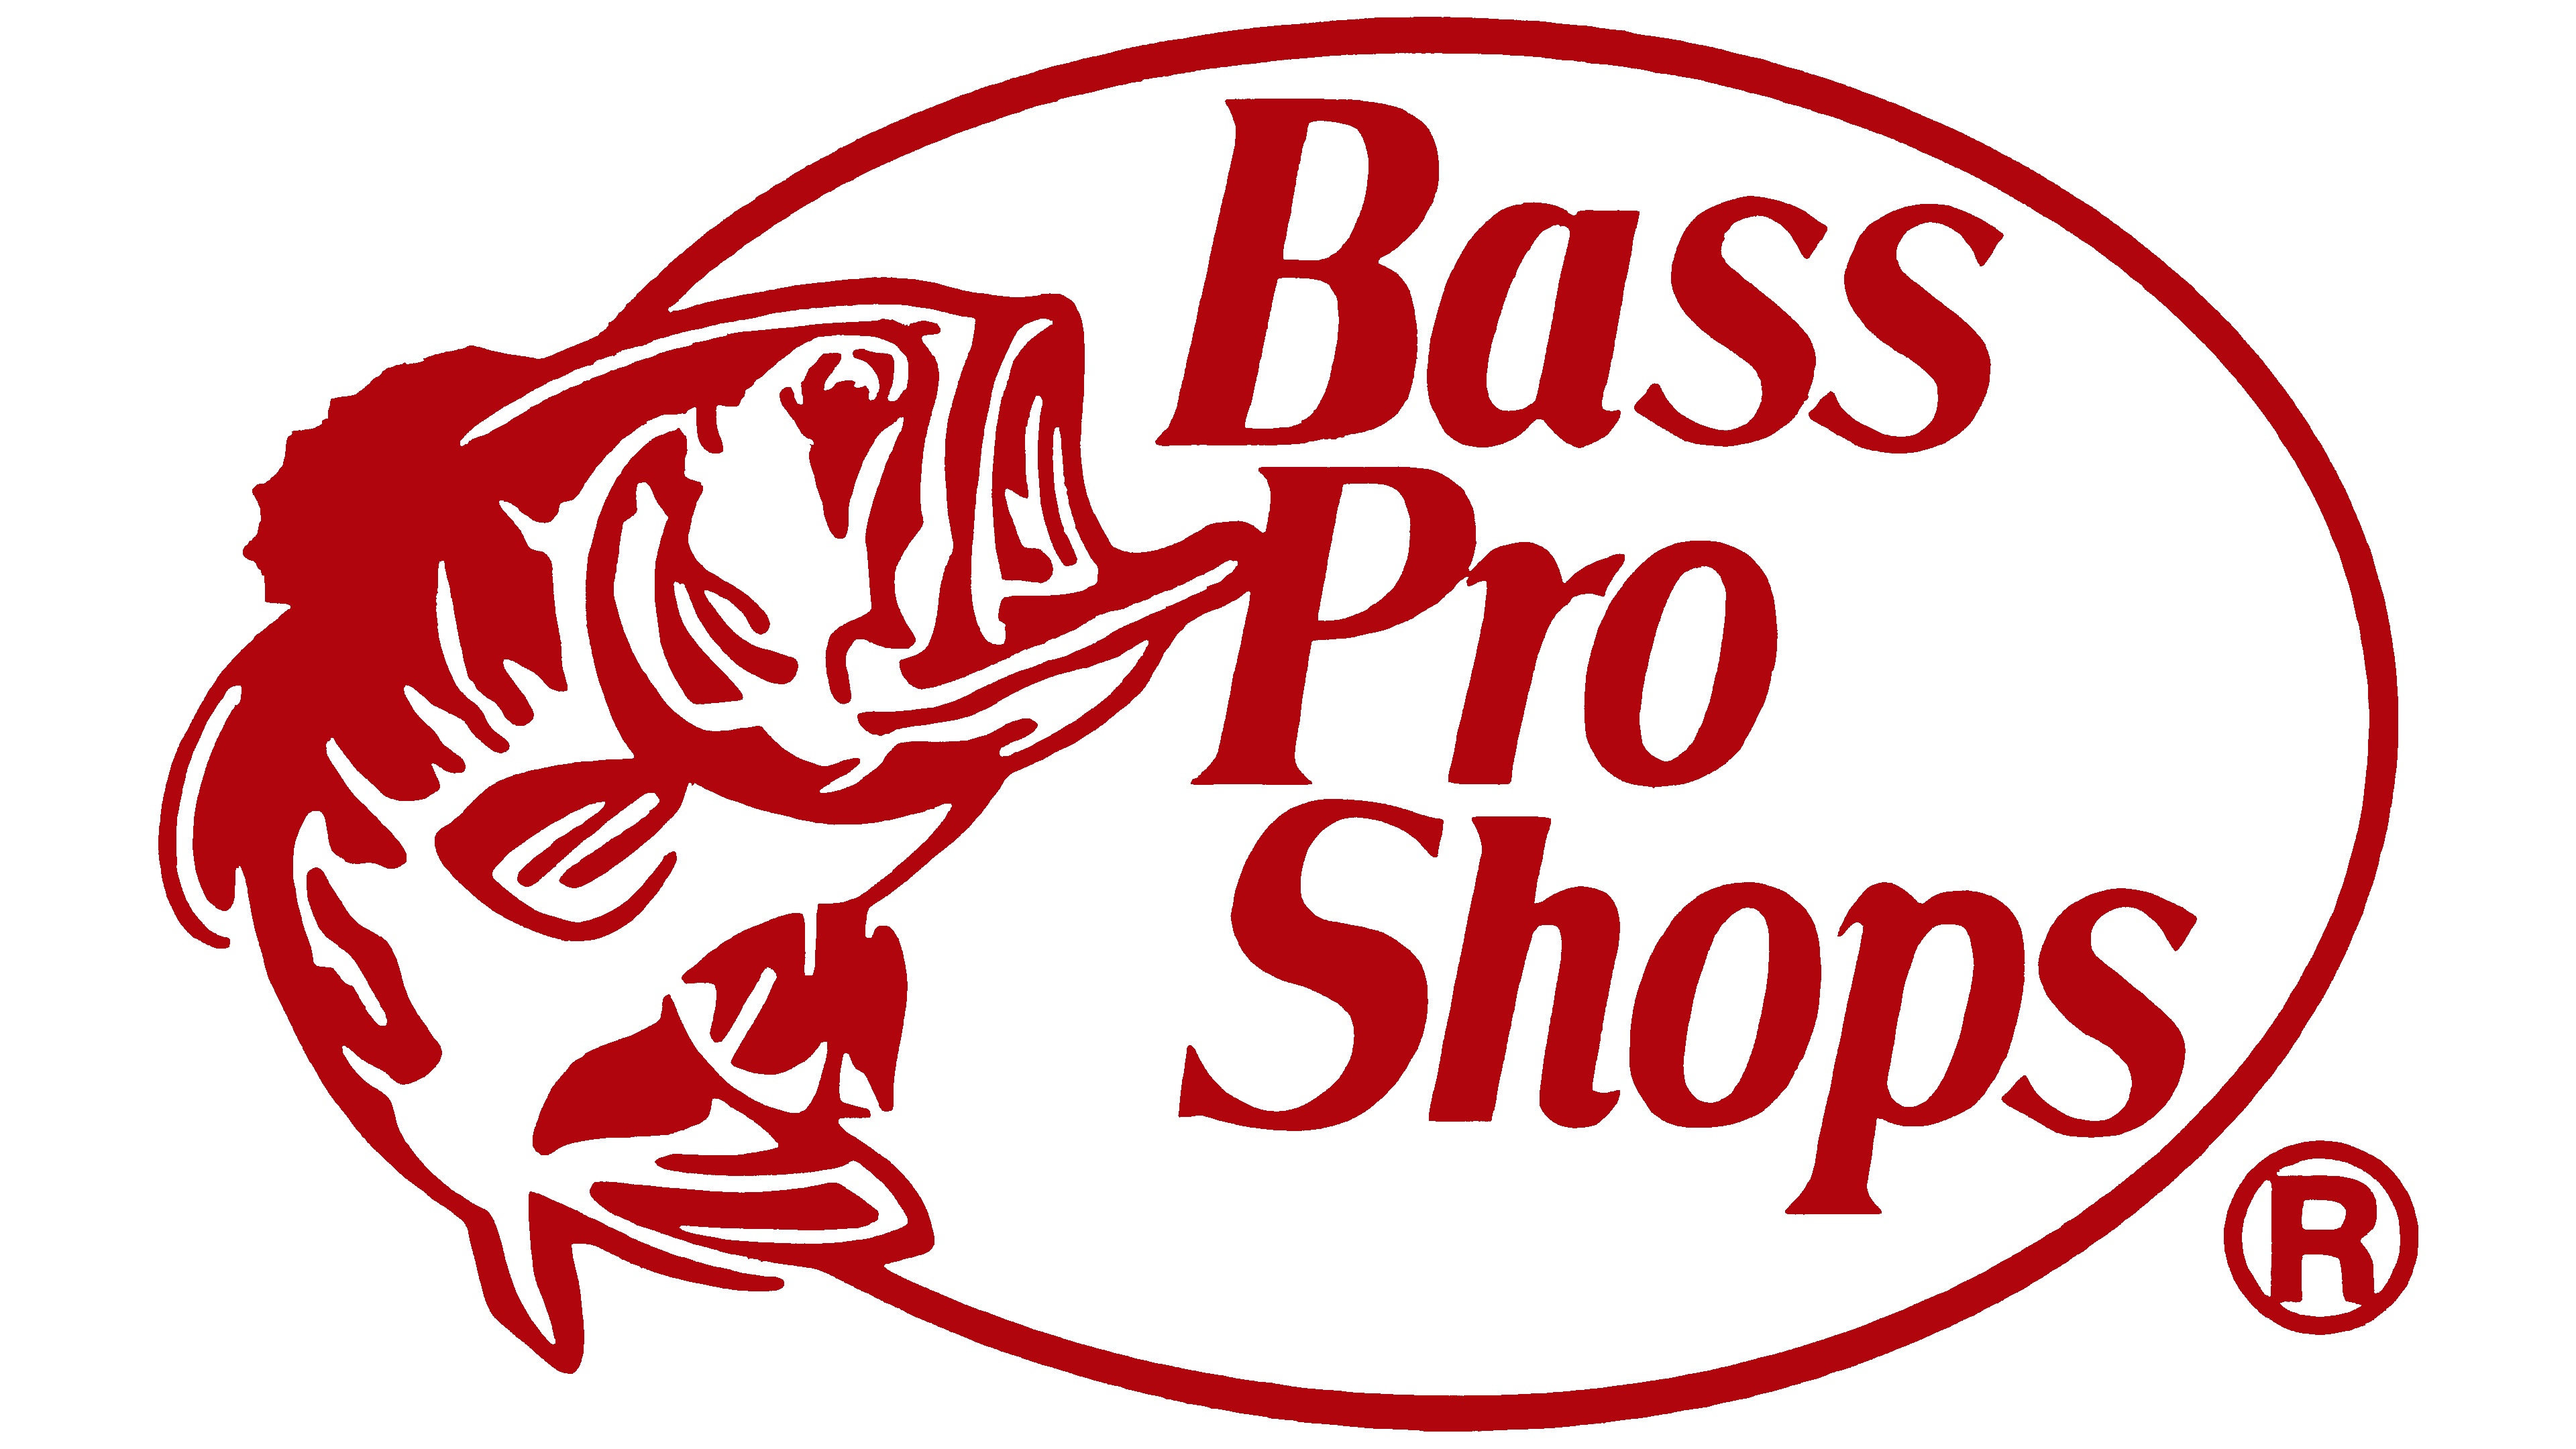 Bass Pro shops logo. Магазины Bass Pro shop. Bass co логотип. Bass Pro shops футболка. Bass pro shops